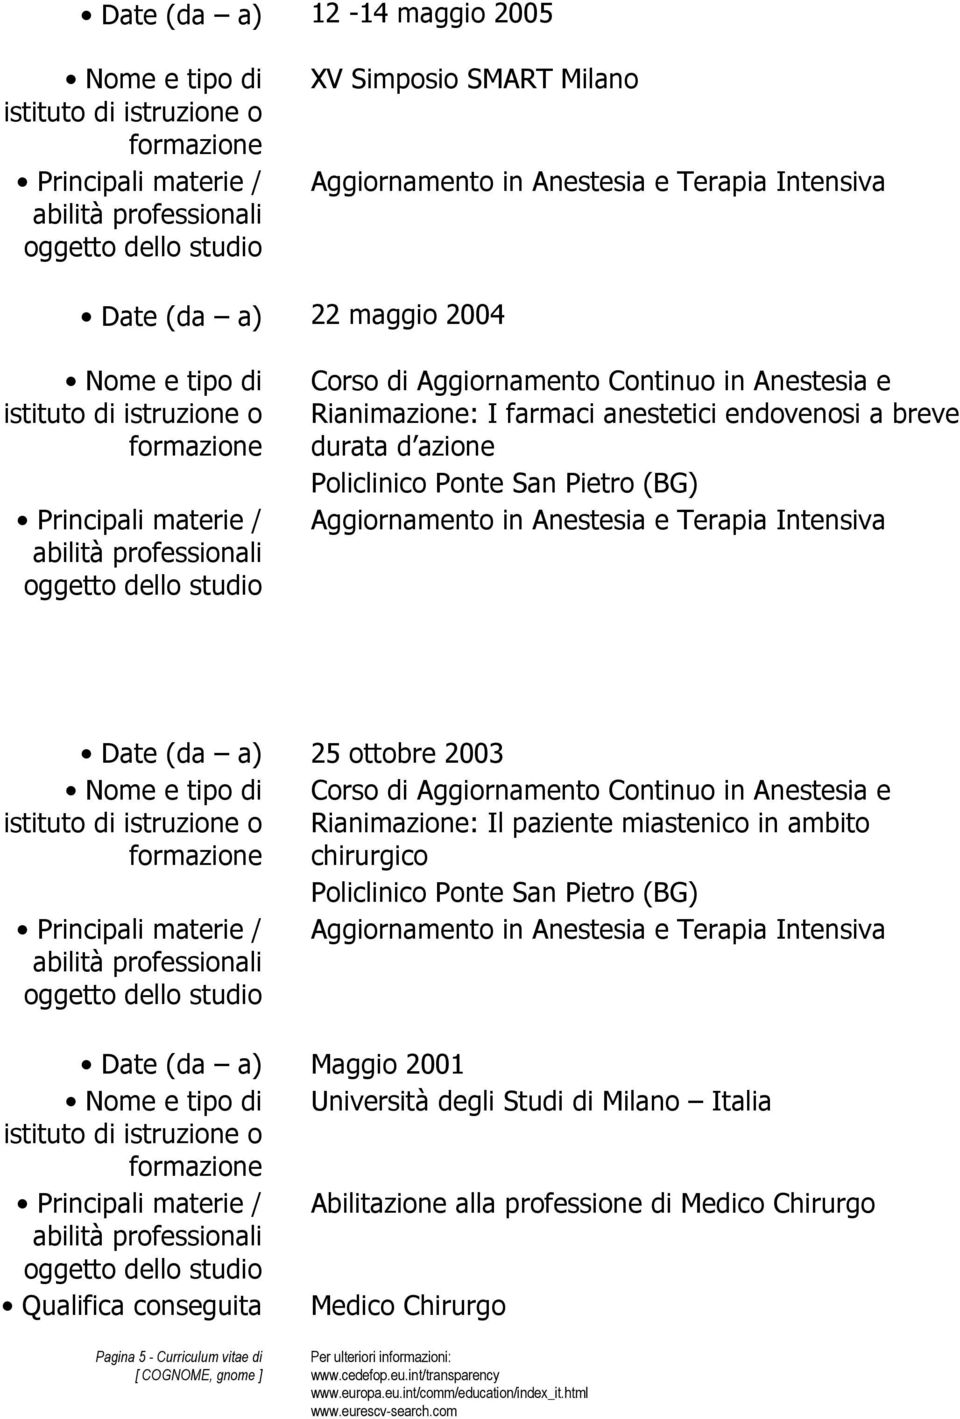 Continuo in Anestesia e Rianimazione: Il paziente miastenico in ambito chirurgico Policlinico Ponte San Pietro (BG) Date (da a) Maggio 2001